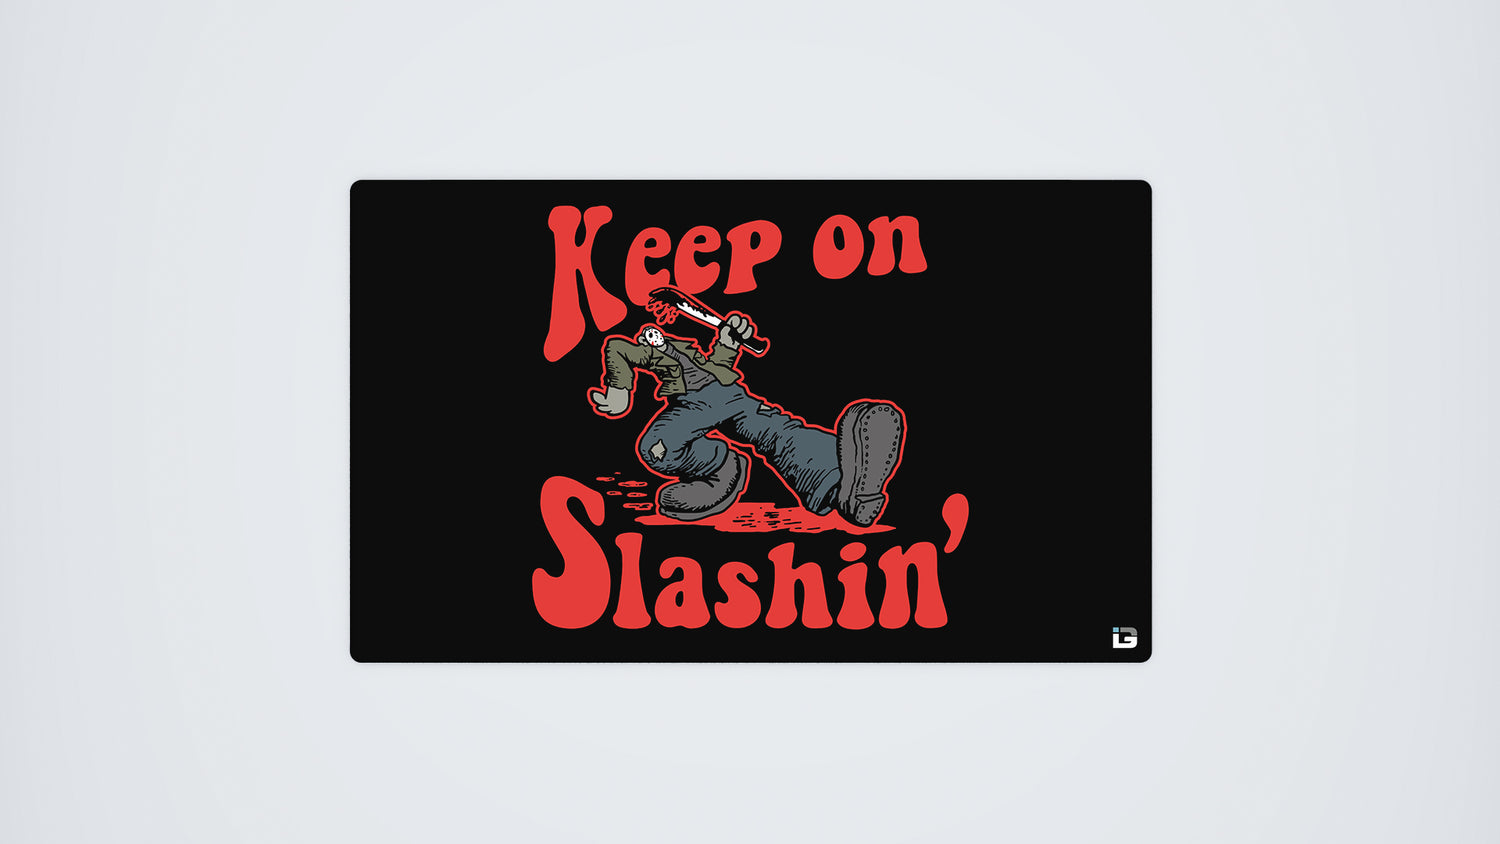 Keep On Slashin